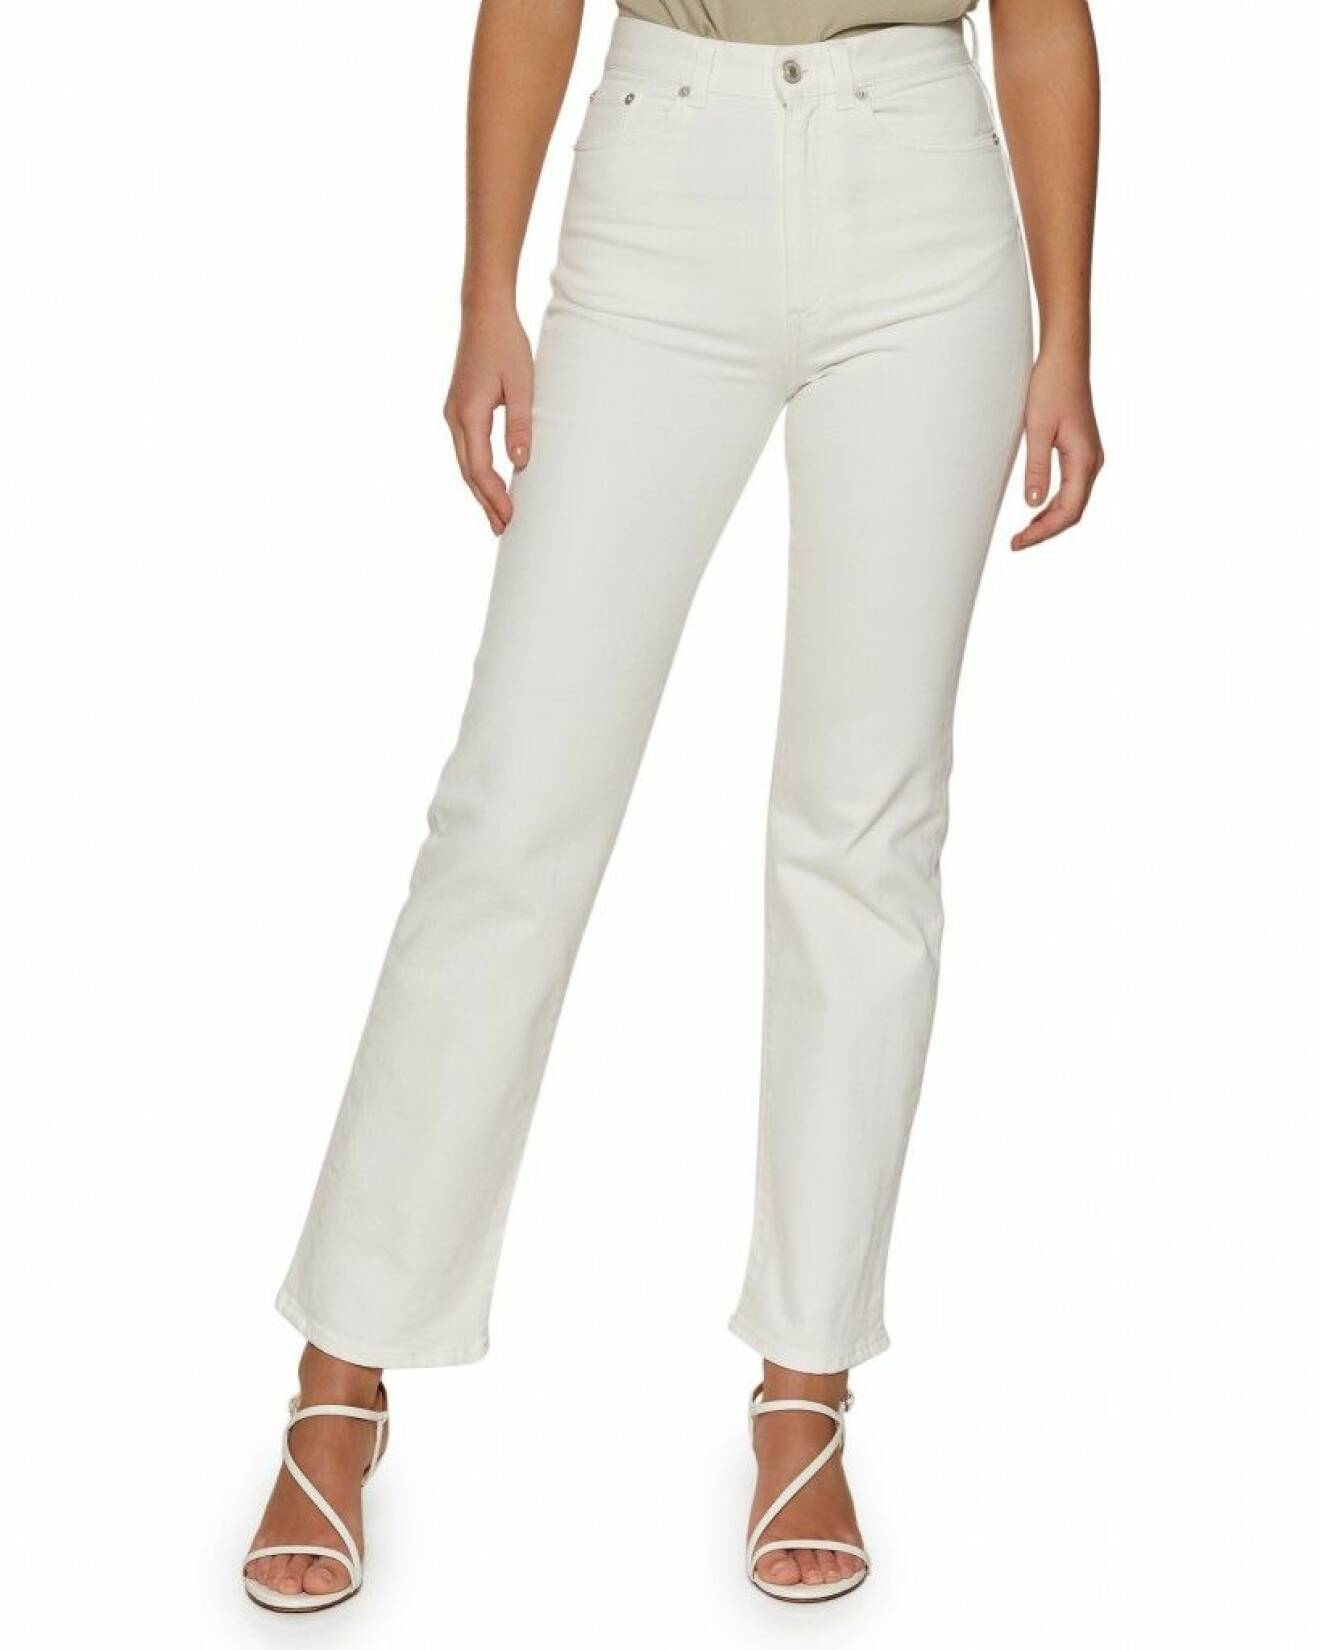 vita jeans från Jeanerica som har stretchig passform och högmidja